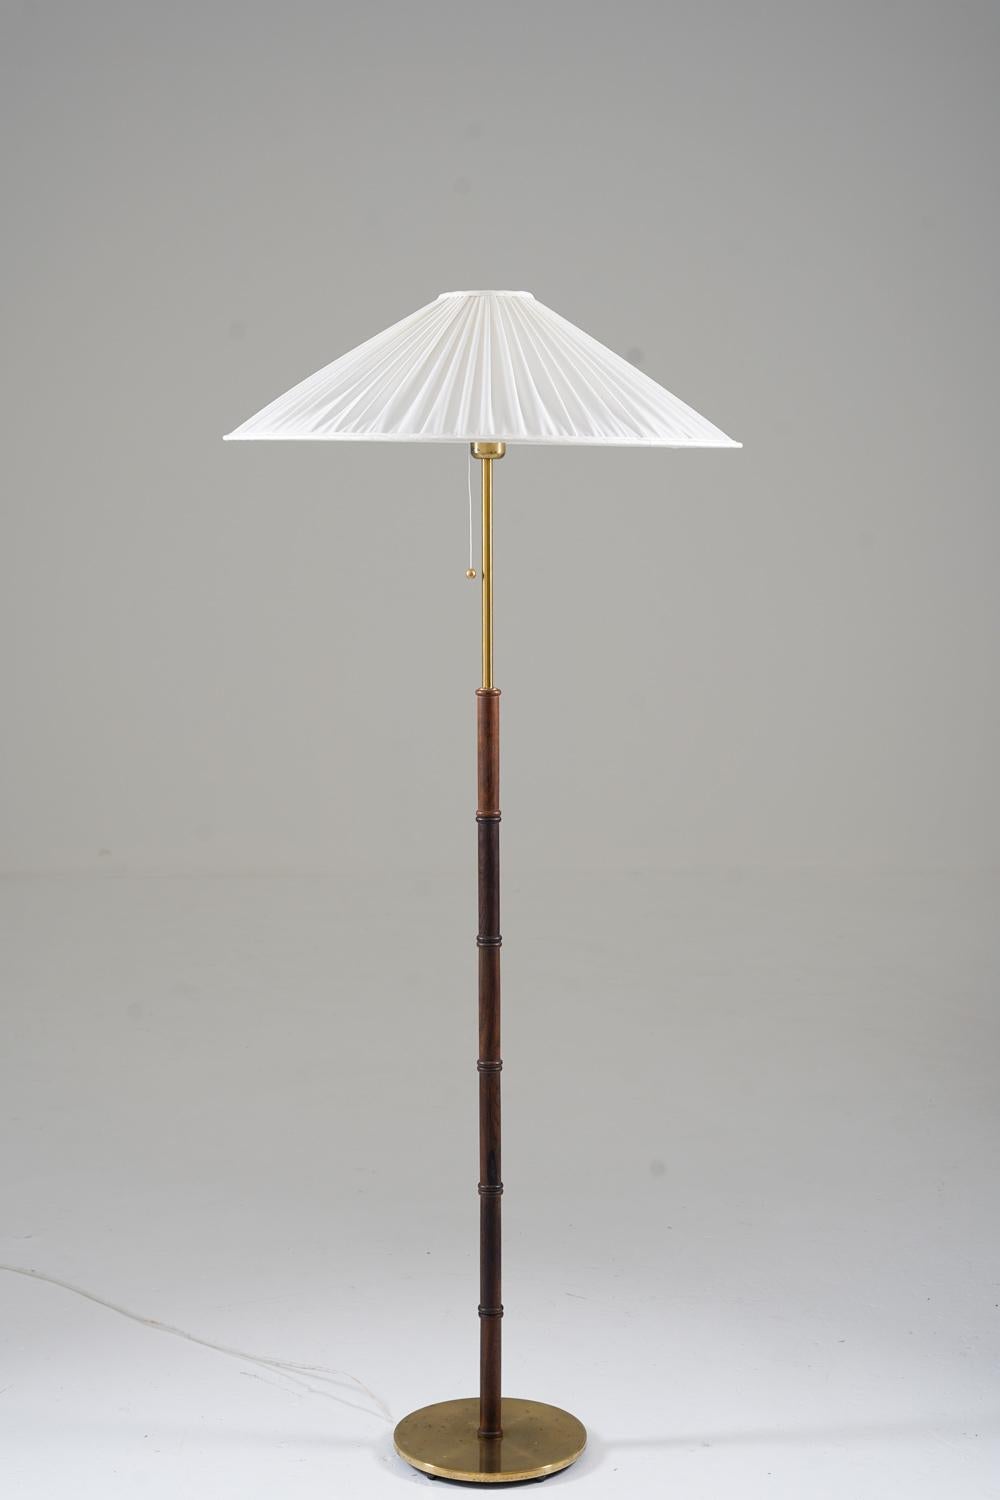 Joli lampadaire en laiton et bois de rose par Falkenbergs, Suède, années 1960.
Le design est simple et laisse l'attention se concentrer sur les détails parfaitement harmonisés de cette lampe.

Condit : Bon état d'origine avec patine sur les parties